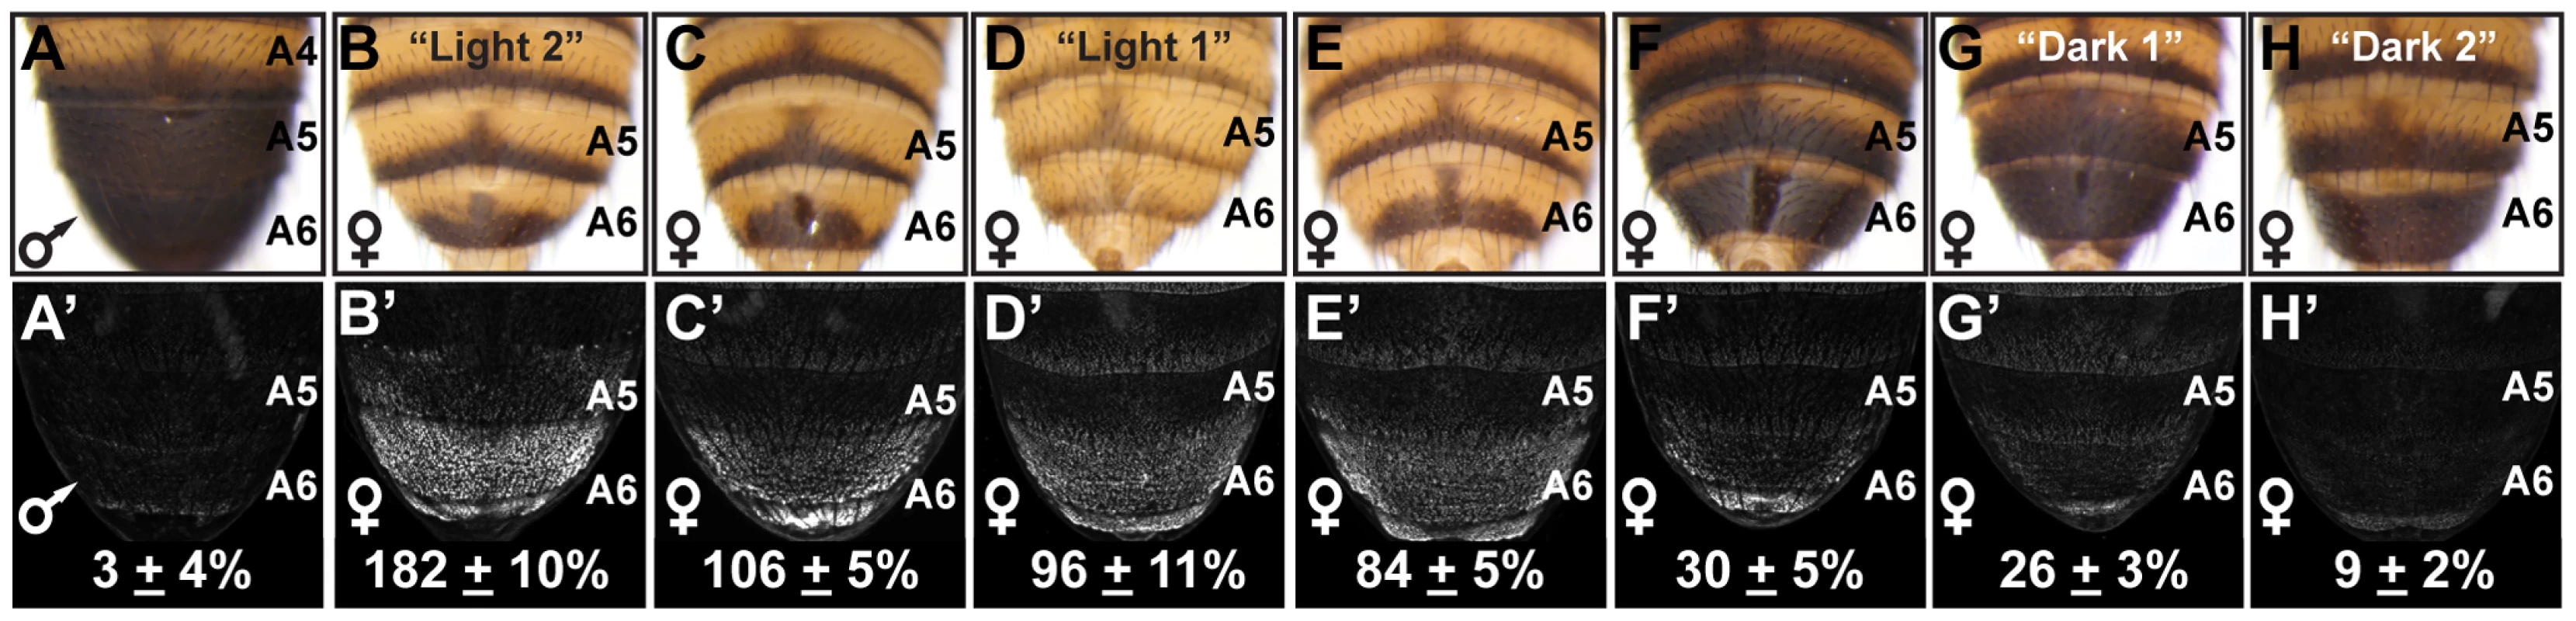 Abdomen pigmentation correlates with the regulatory activity of dimorphic element alleles.